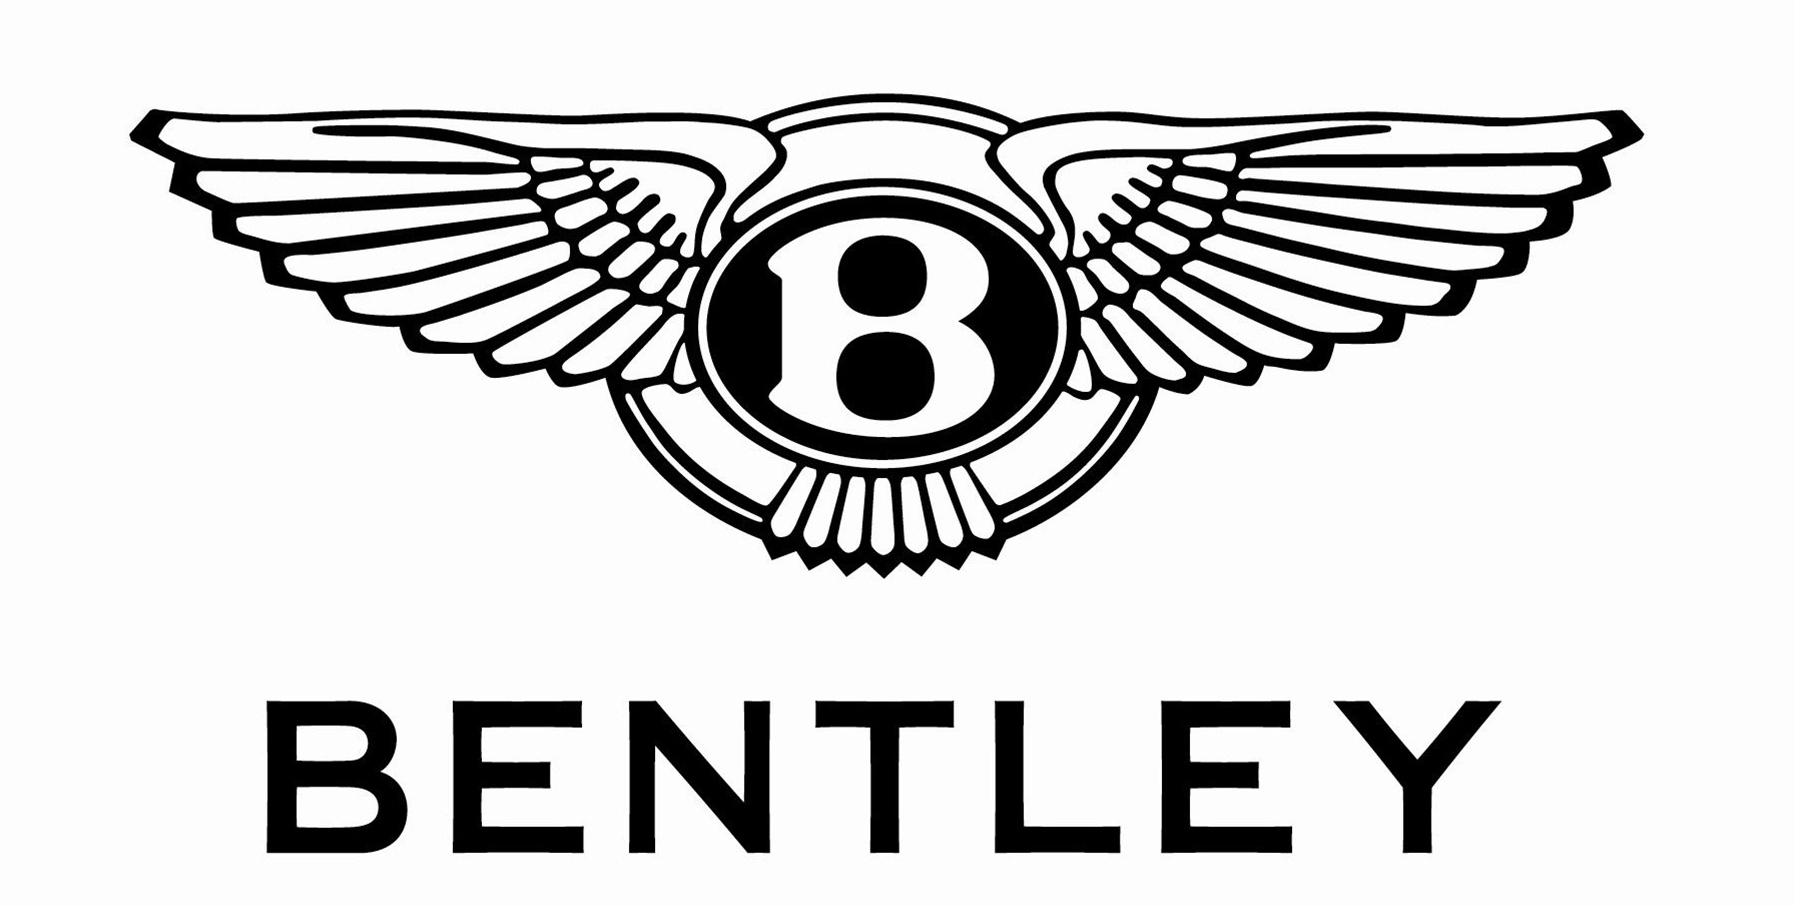 6 Bentley Logo Vector Images